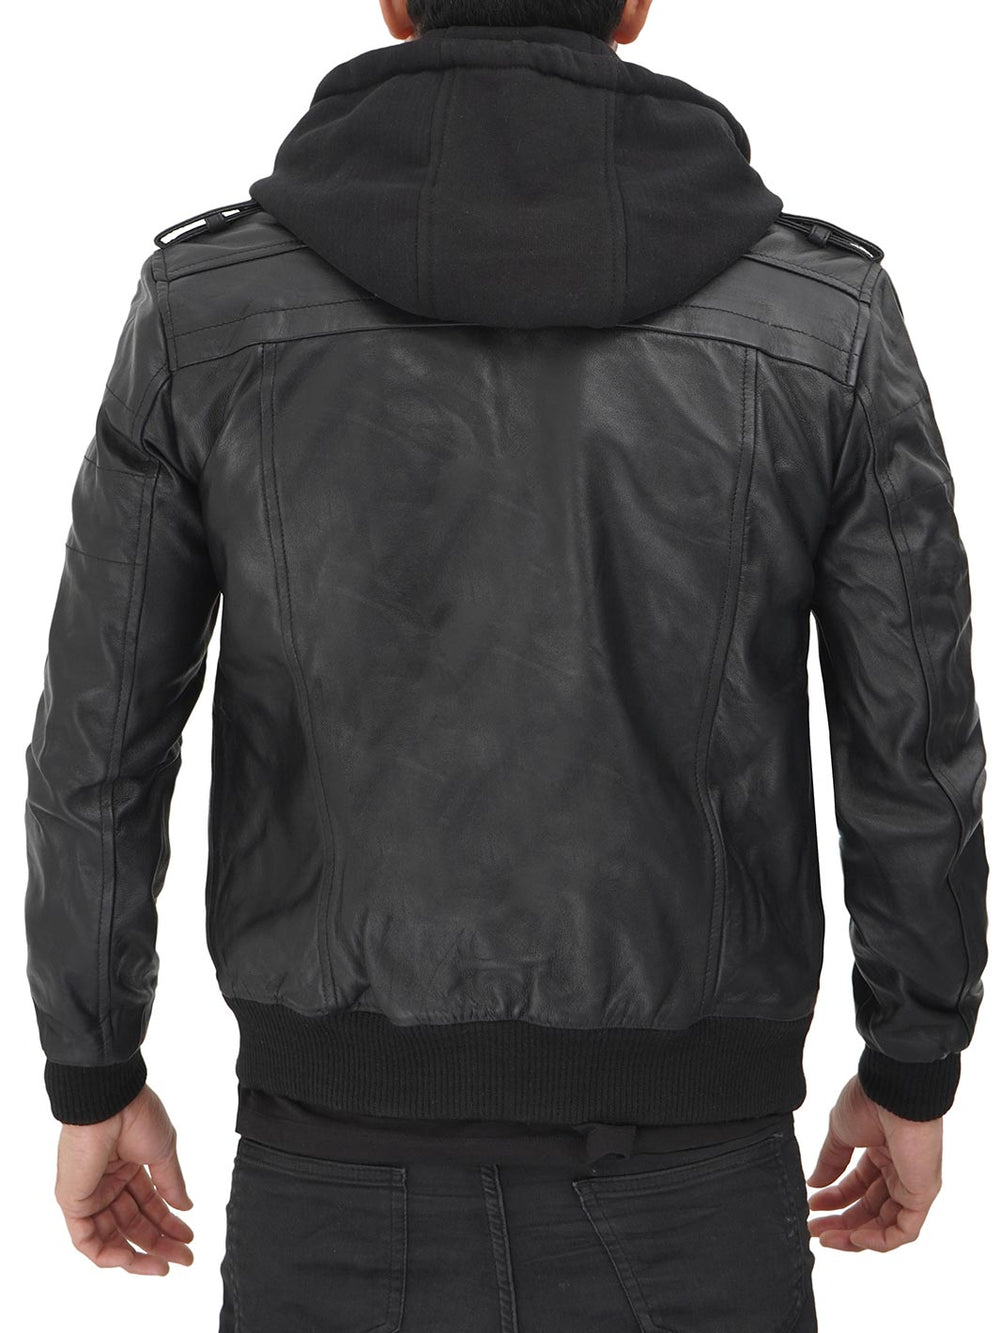 Leather jacket with hood